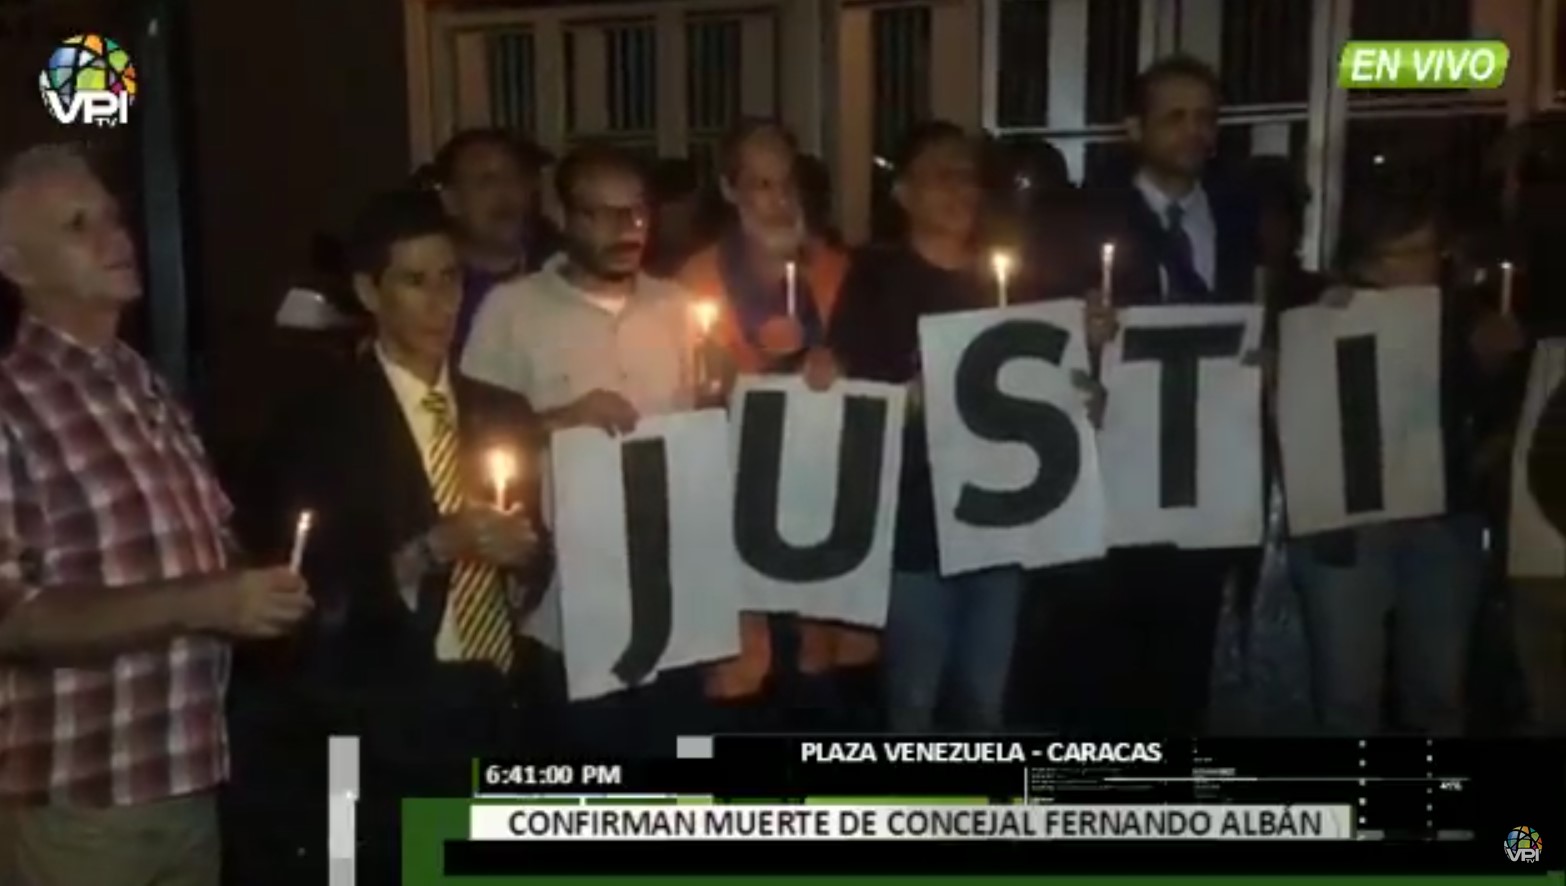 ¡Justicia! Realizan vigilia en honor de Fernando Albán en espera a la entrega de su cuerpo #8Oct